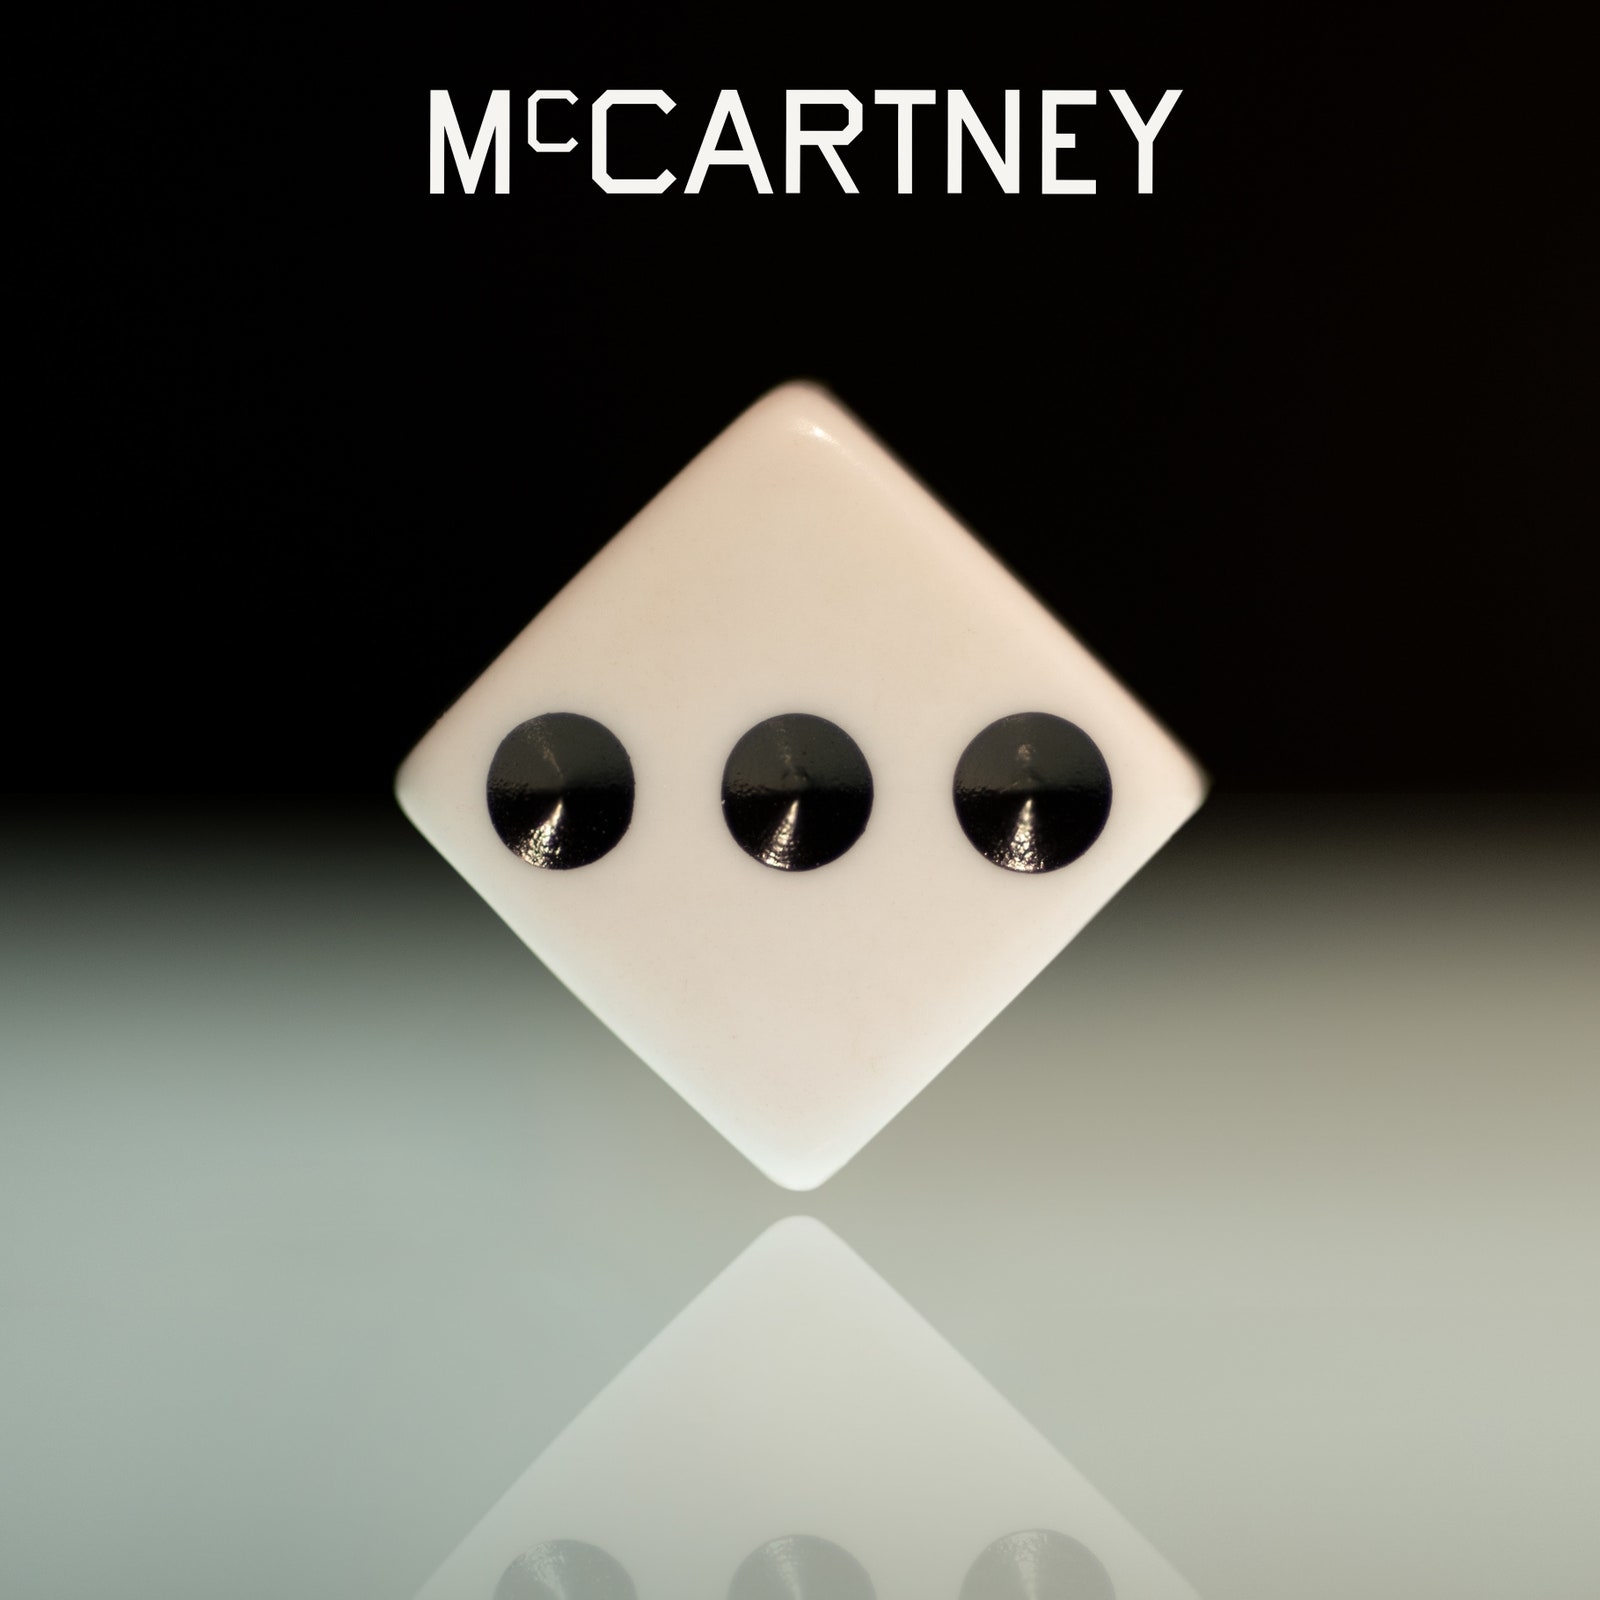 mccartney